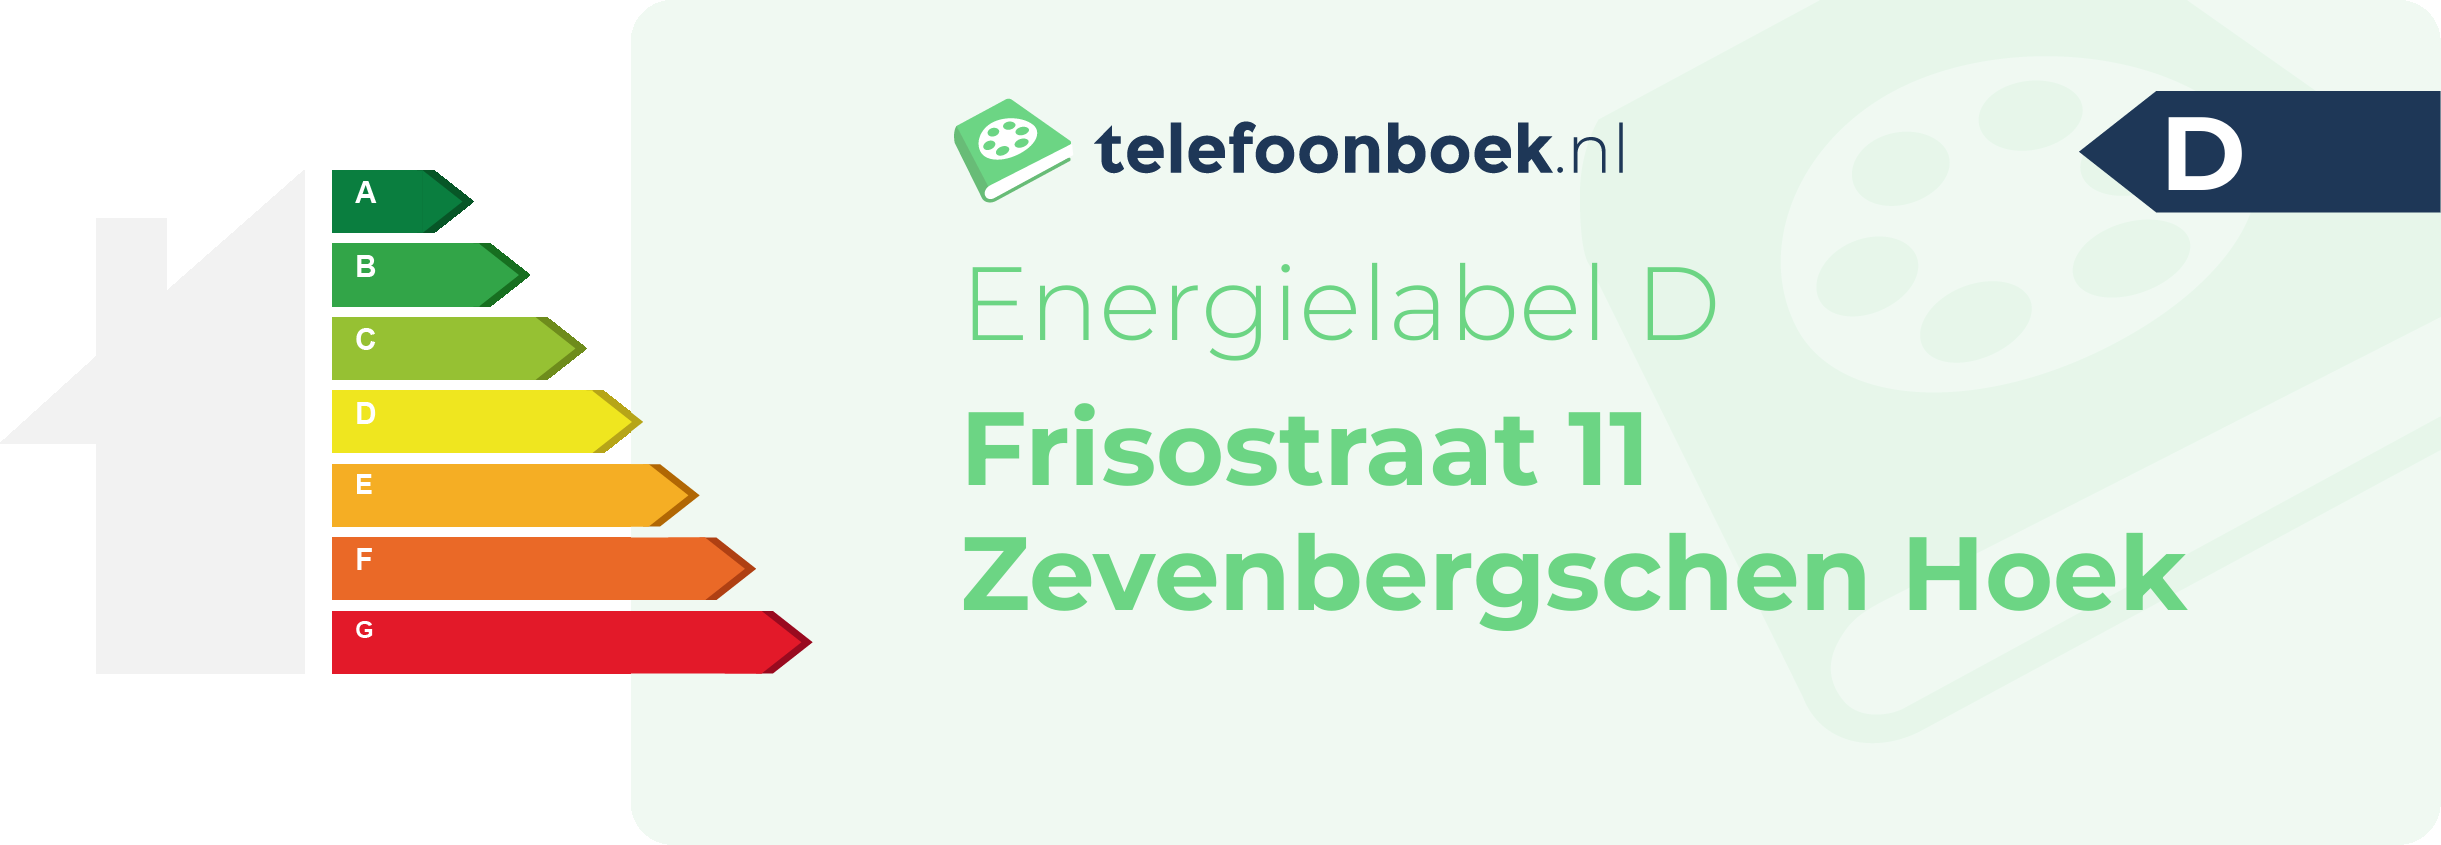 Energielabel Frisostraat 11 Zevenbergschen Hoek